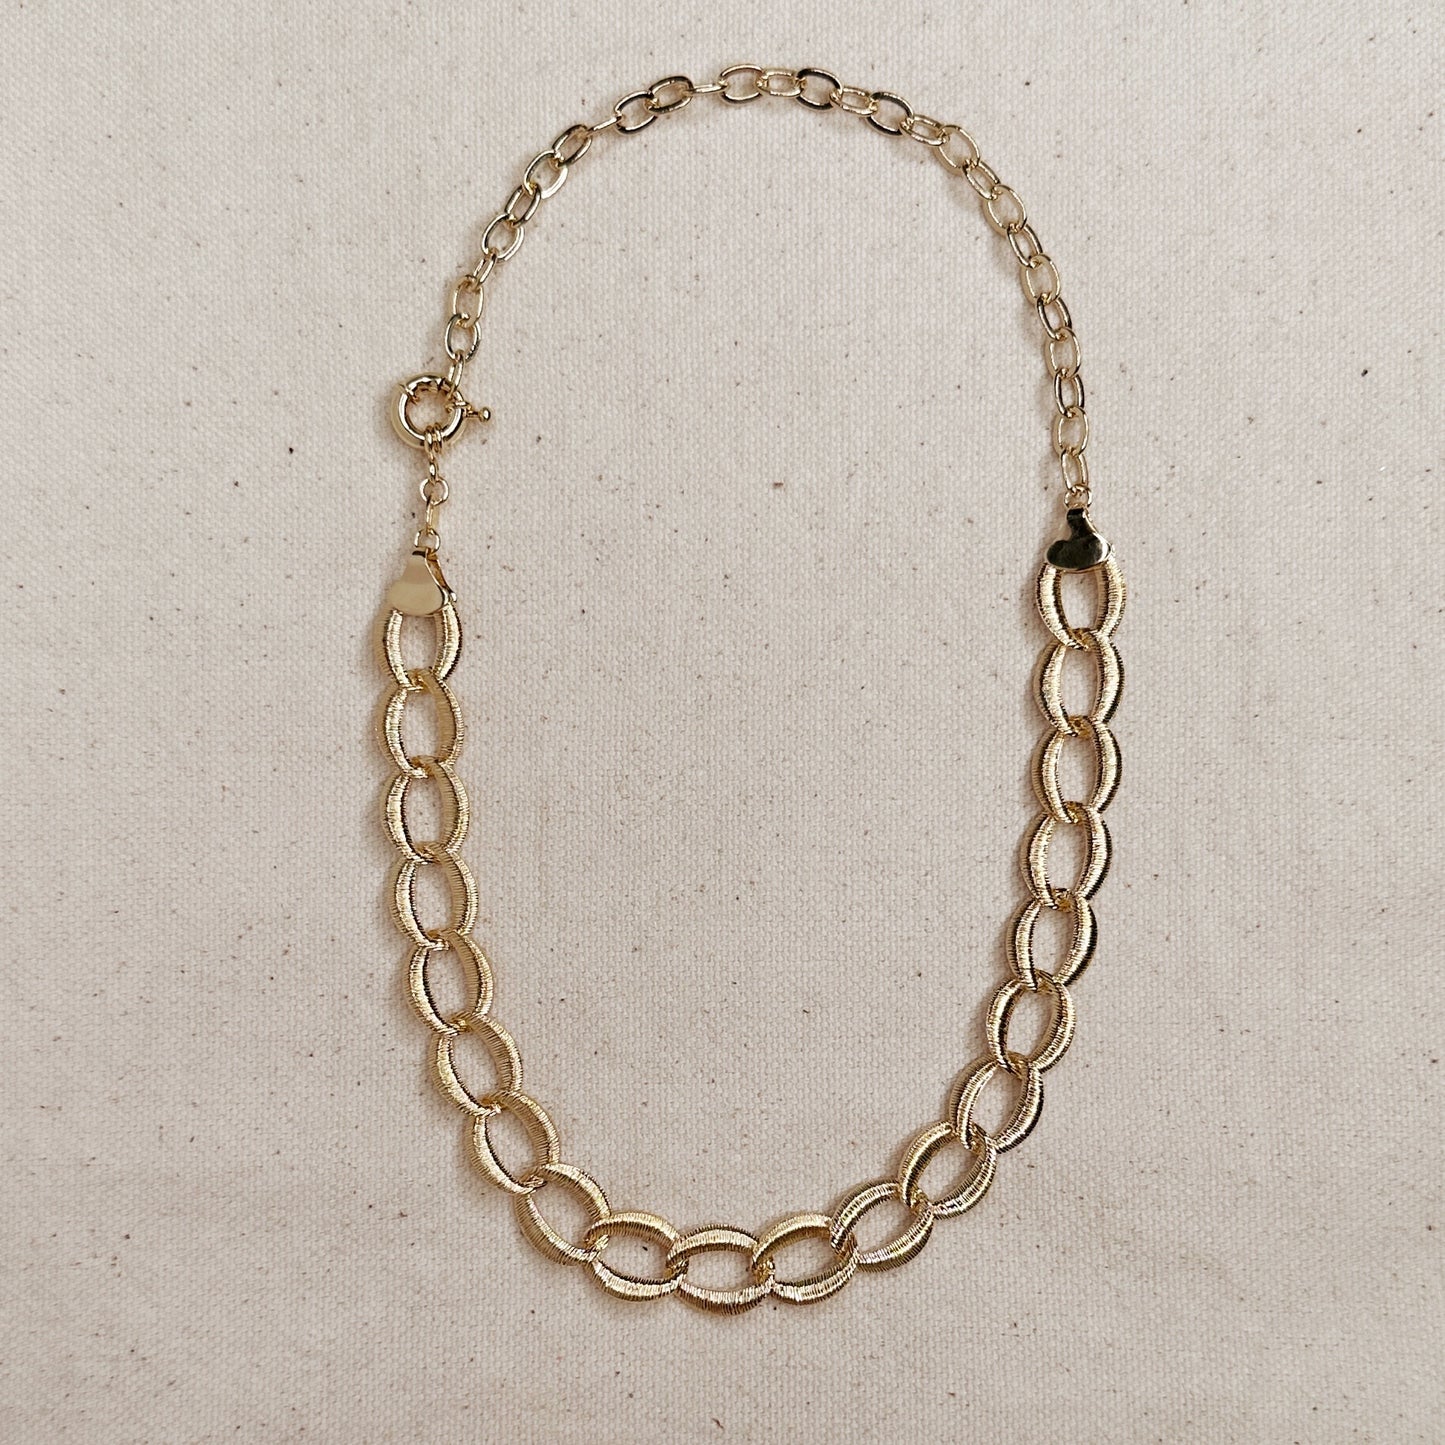 Wide Fancy Links Necklace